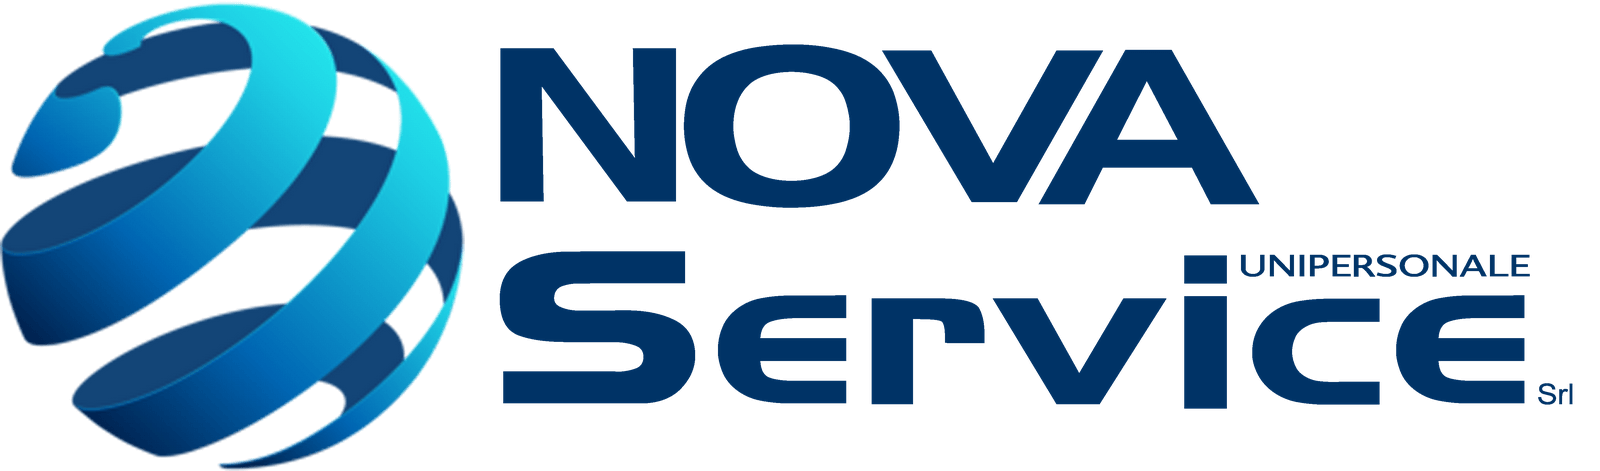 Immagine Logo Nova Service, link alla home